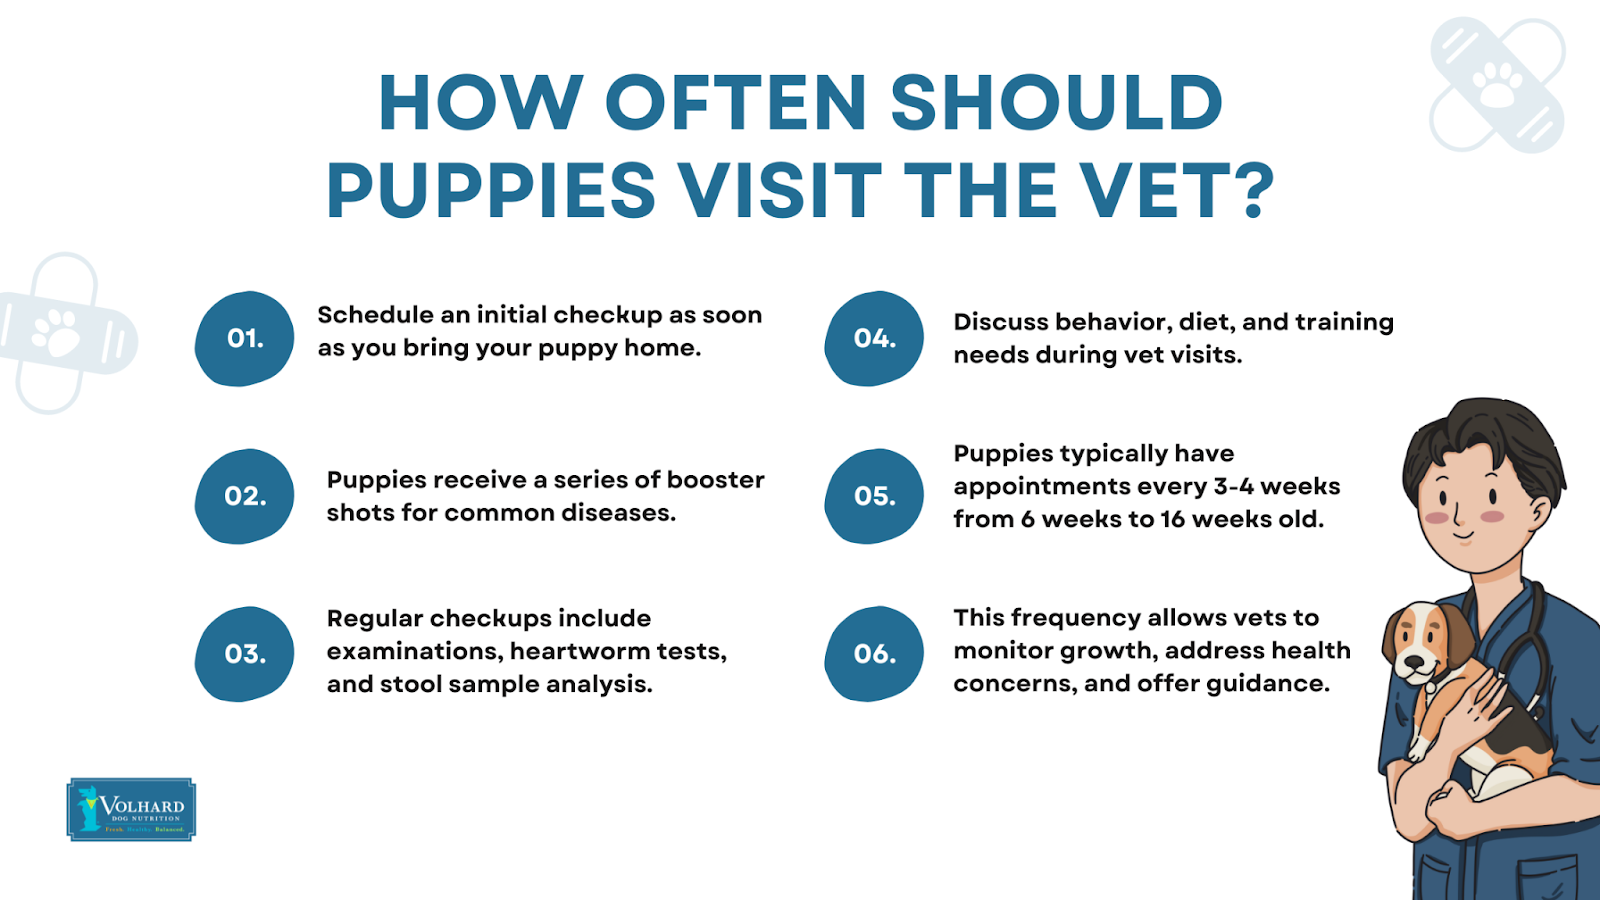 How often puppies visit vet